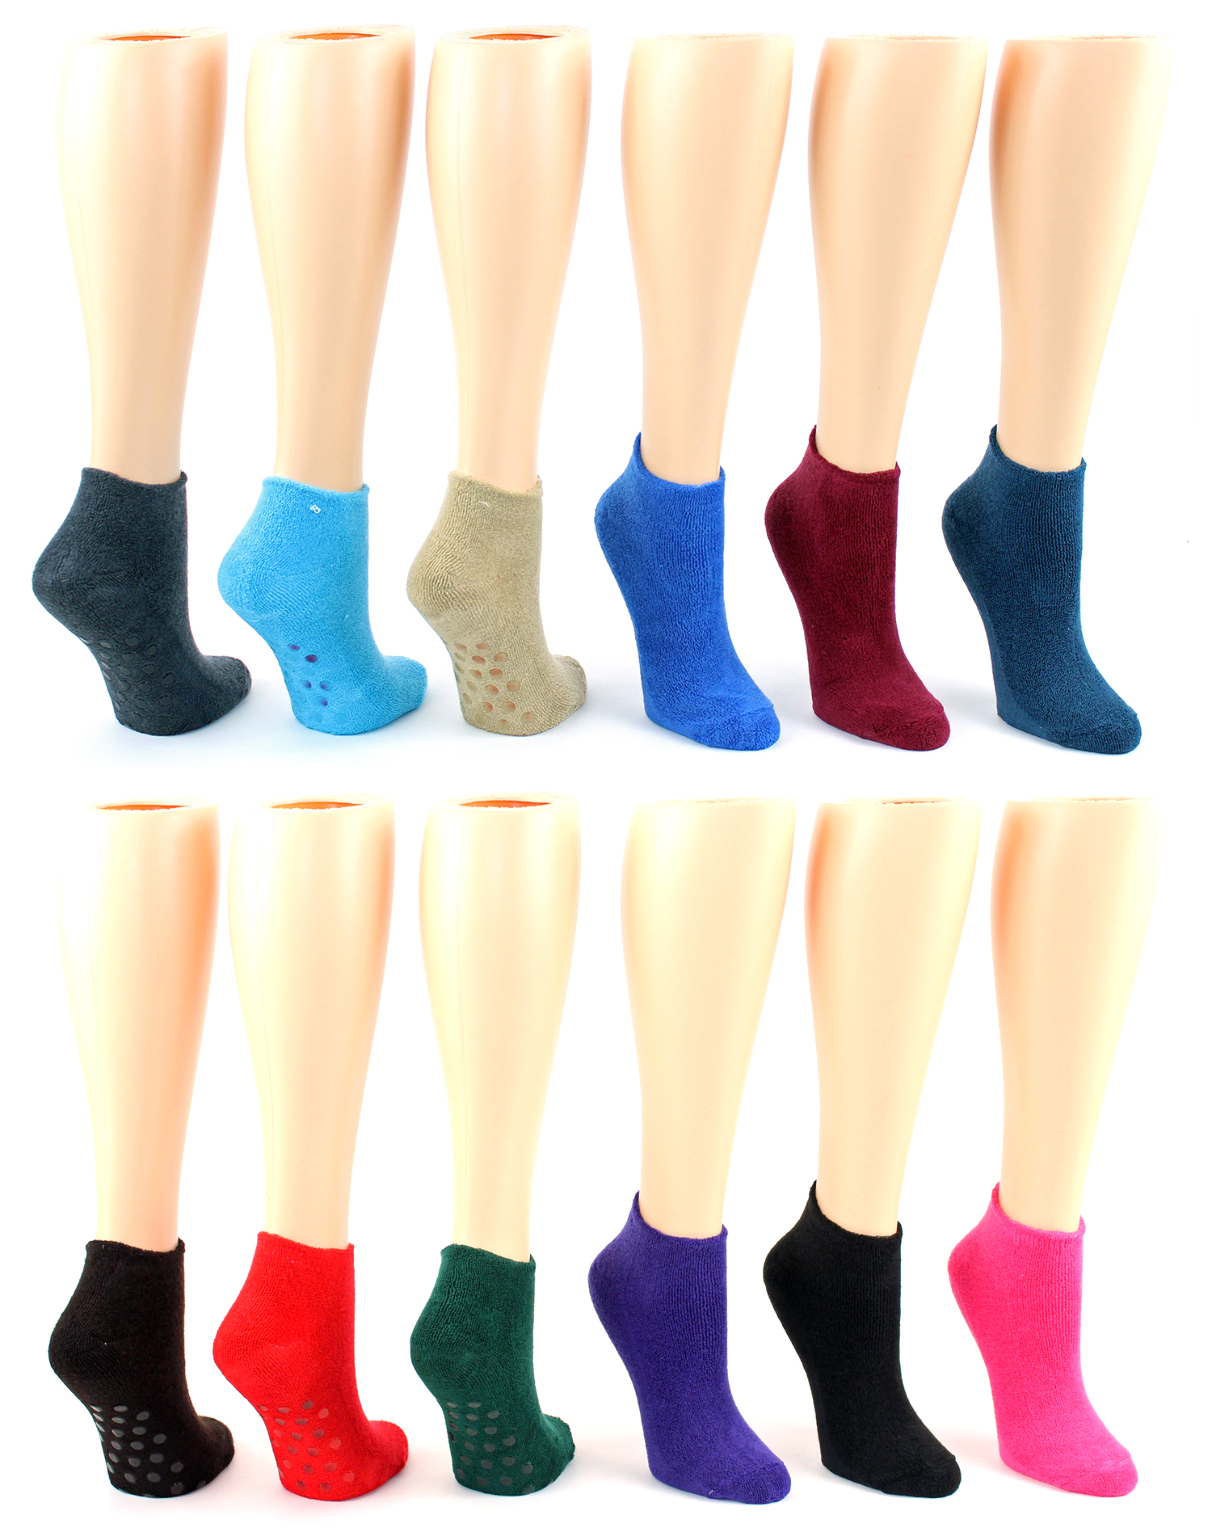 Wholesale Women's Non-Slip Socks - Size 9-11 - Bulk Women's Socks